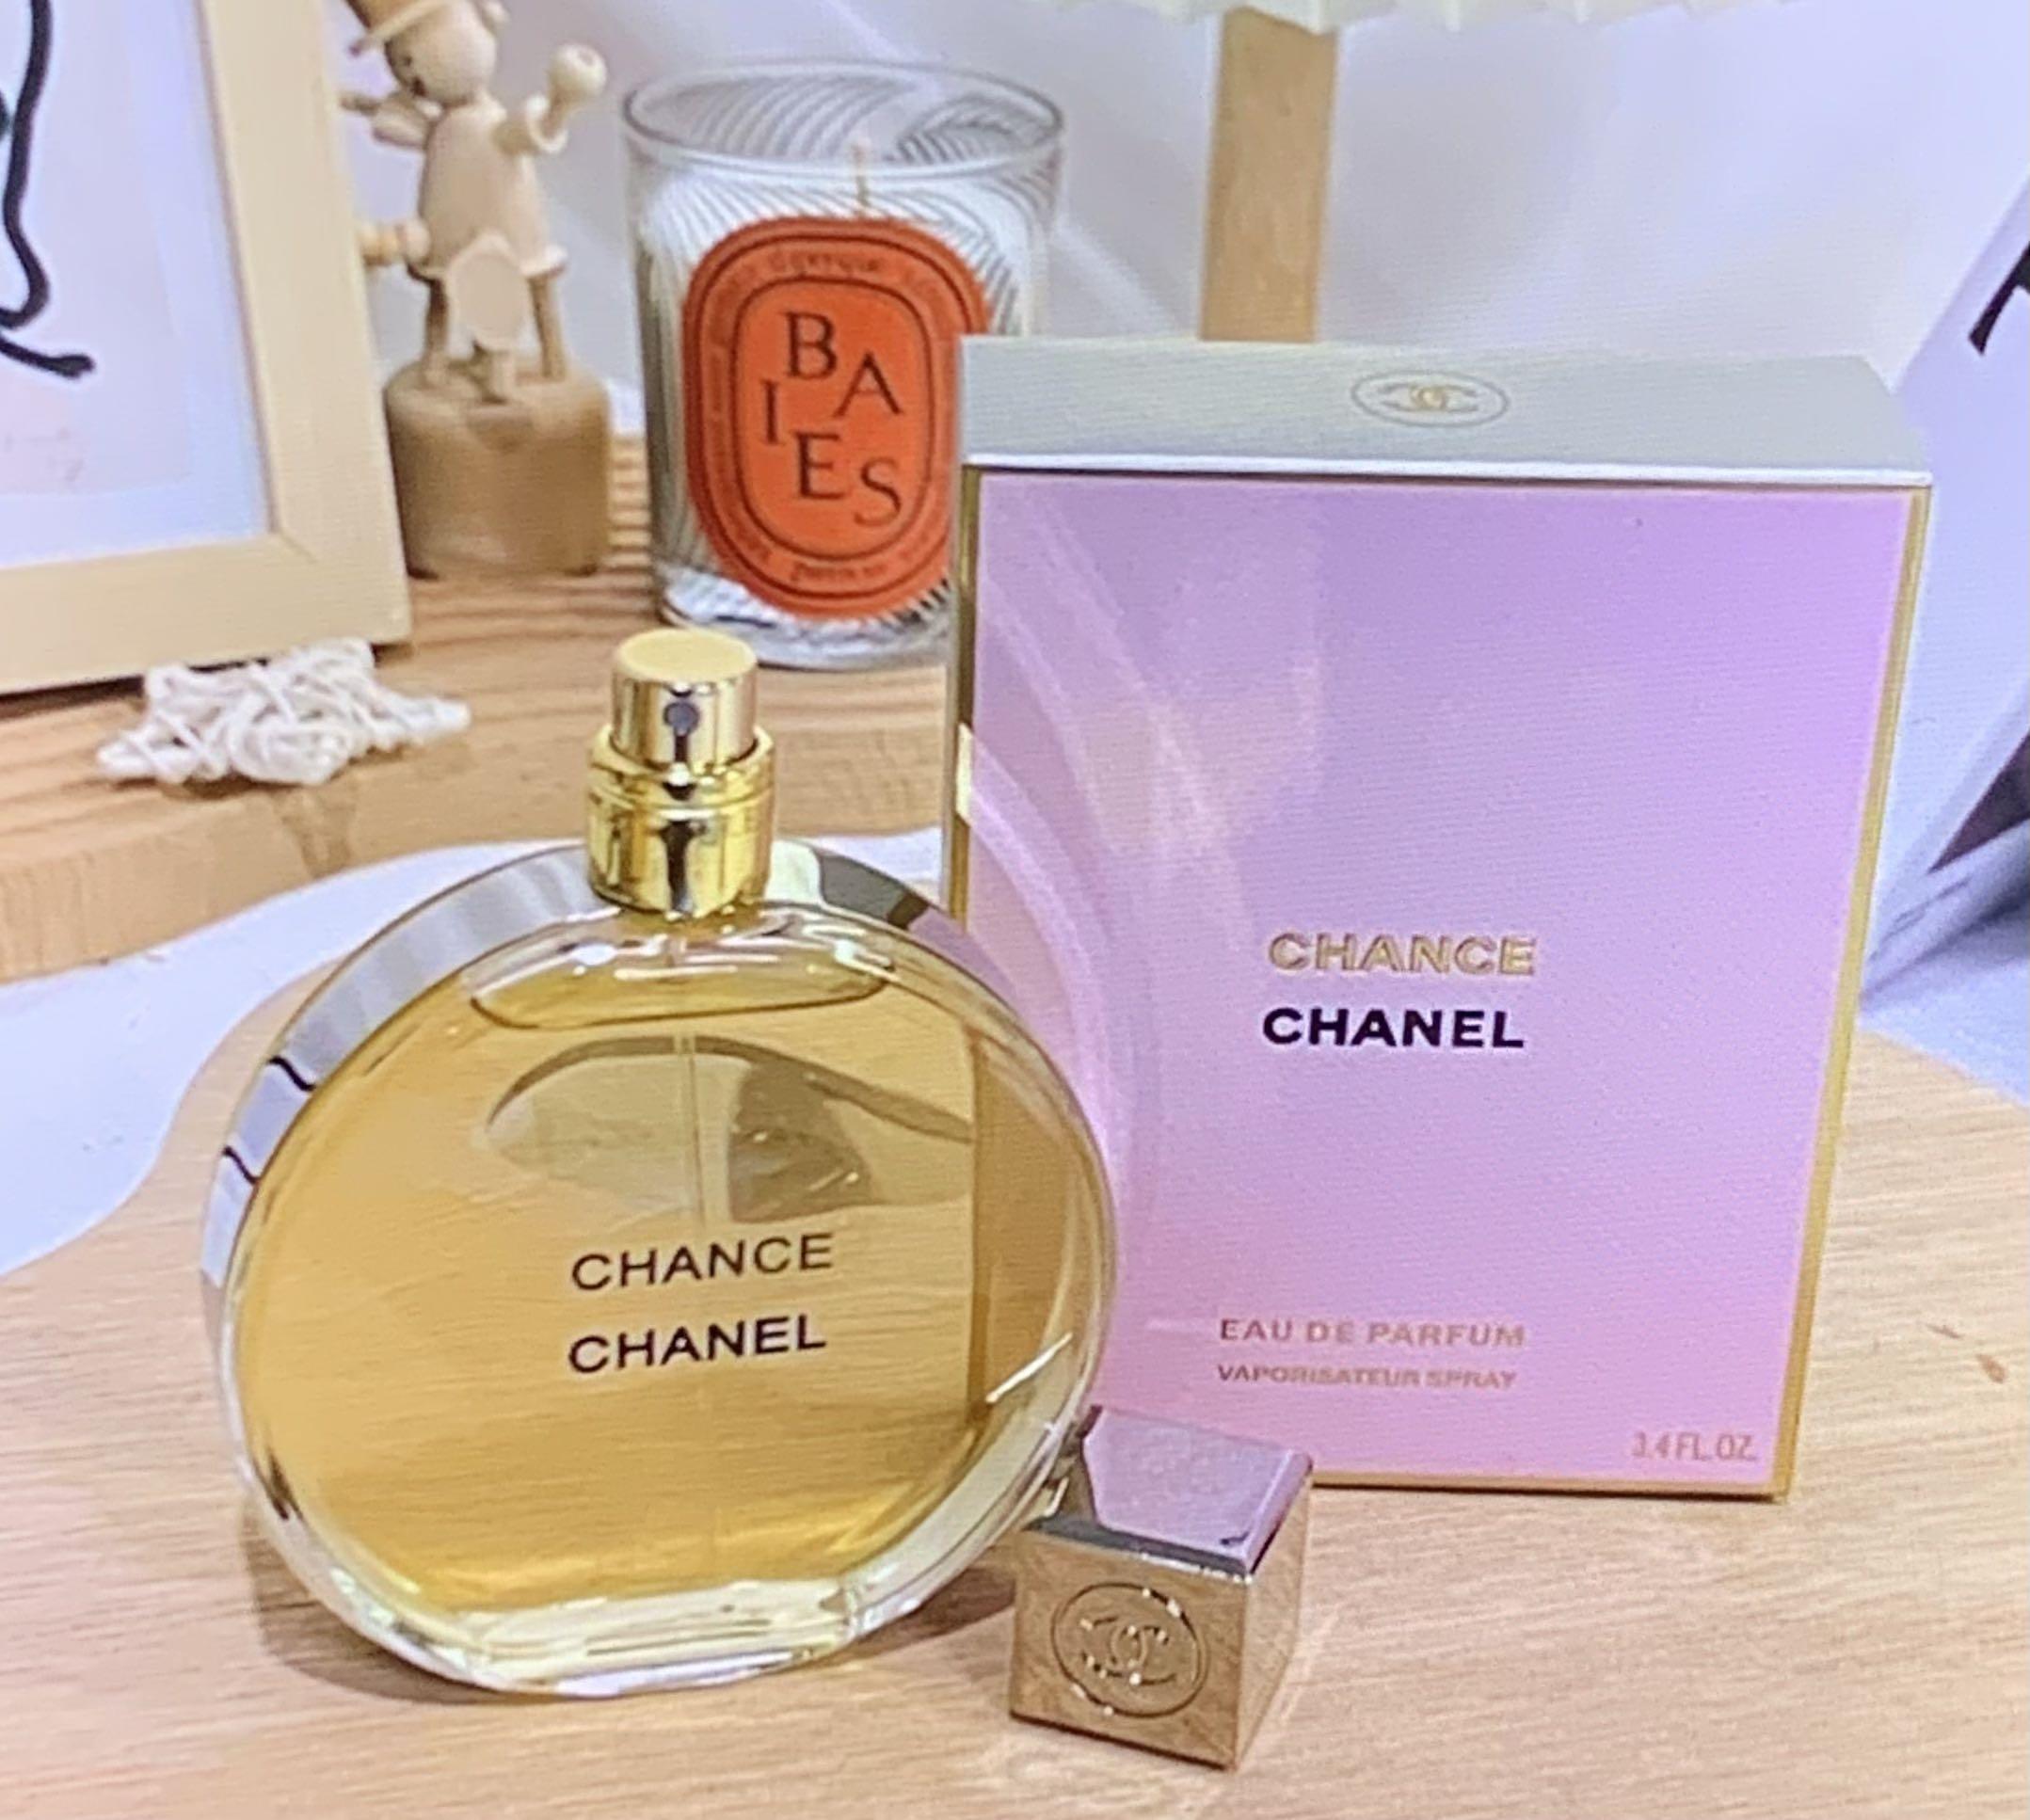 Chanel Chance Eau De Parfum, Beauty & Personal Care, Fragrance